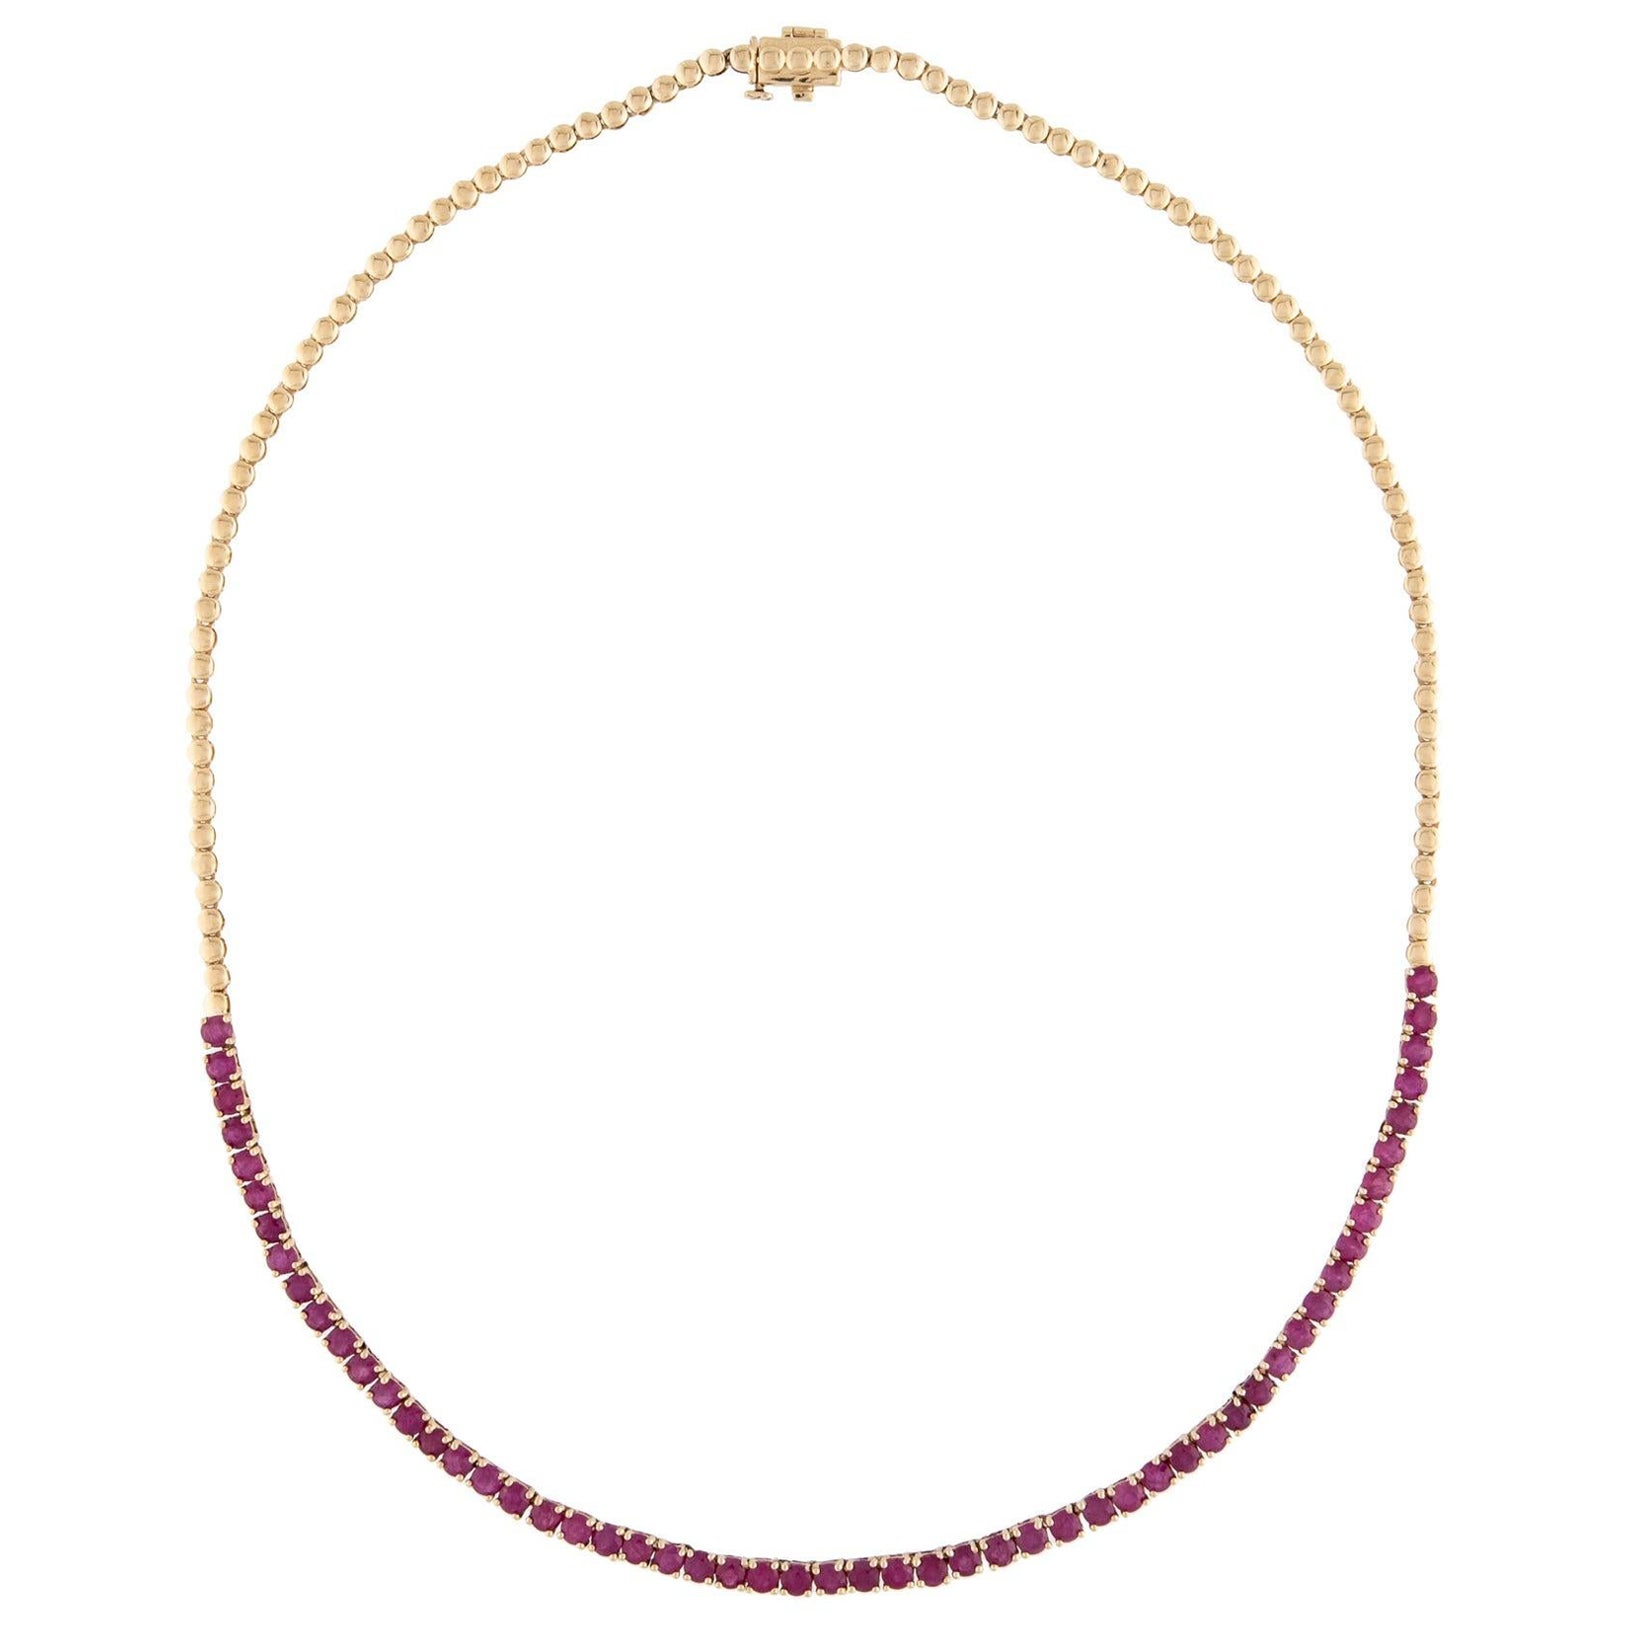 Luxury 14K 10.17ctw Ruby Collar Necklace - Exquisite Gemstone Statement Piece